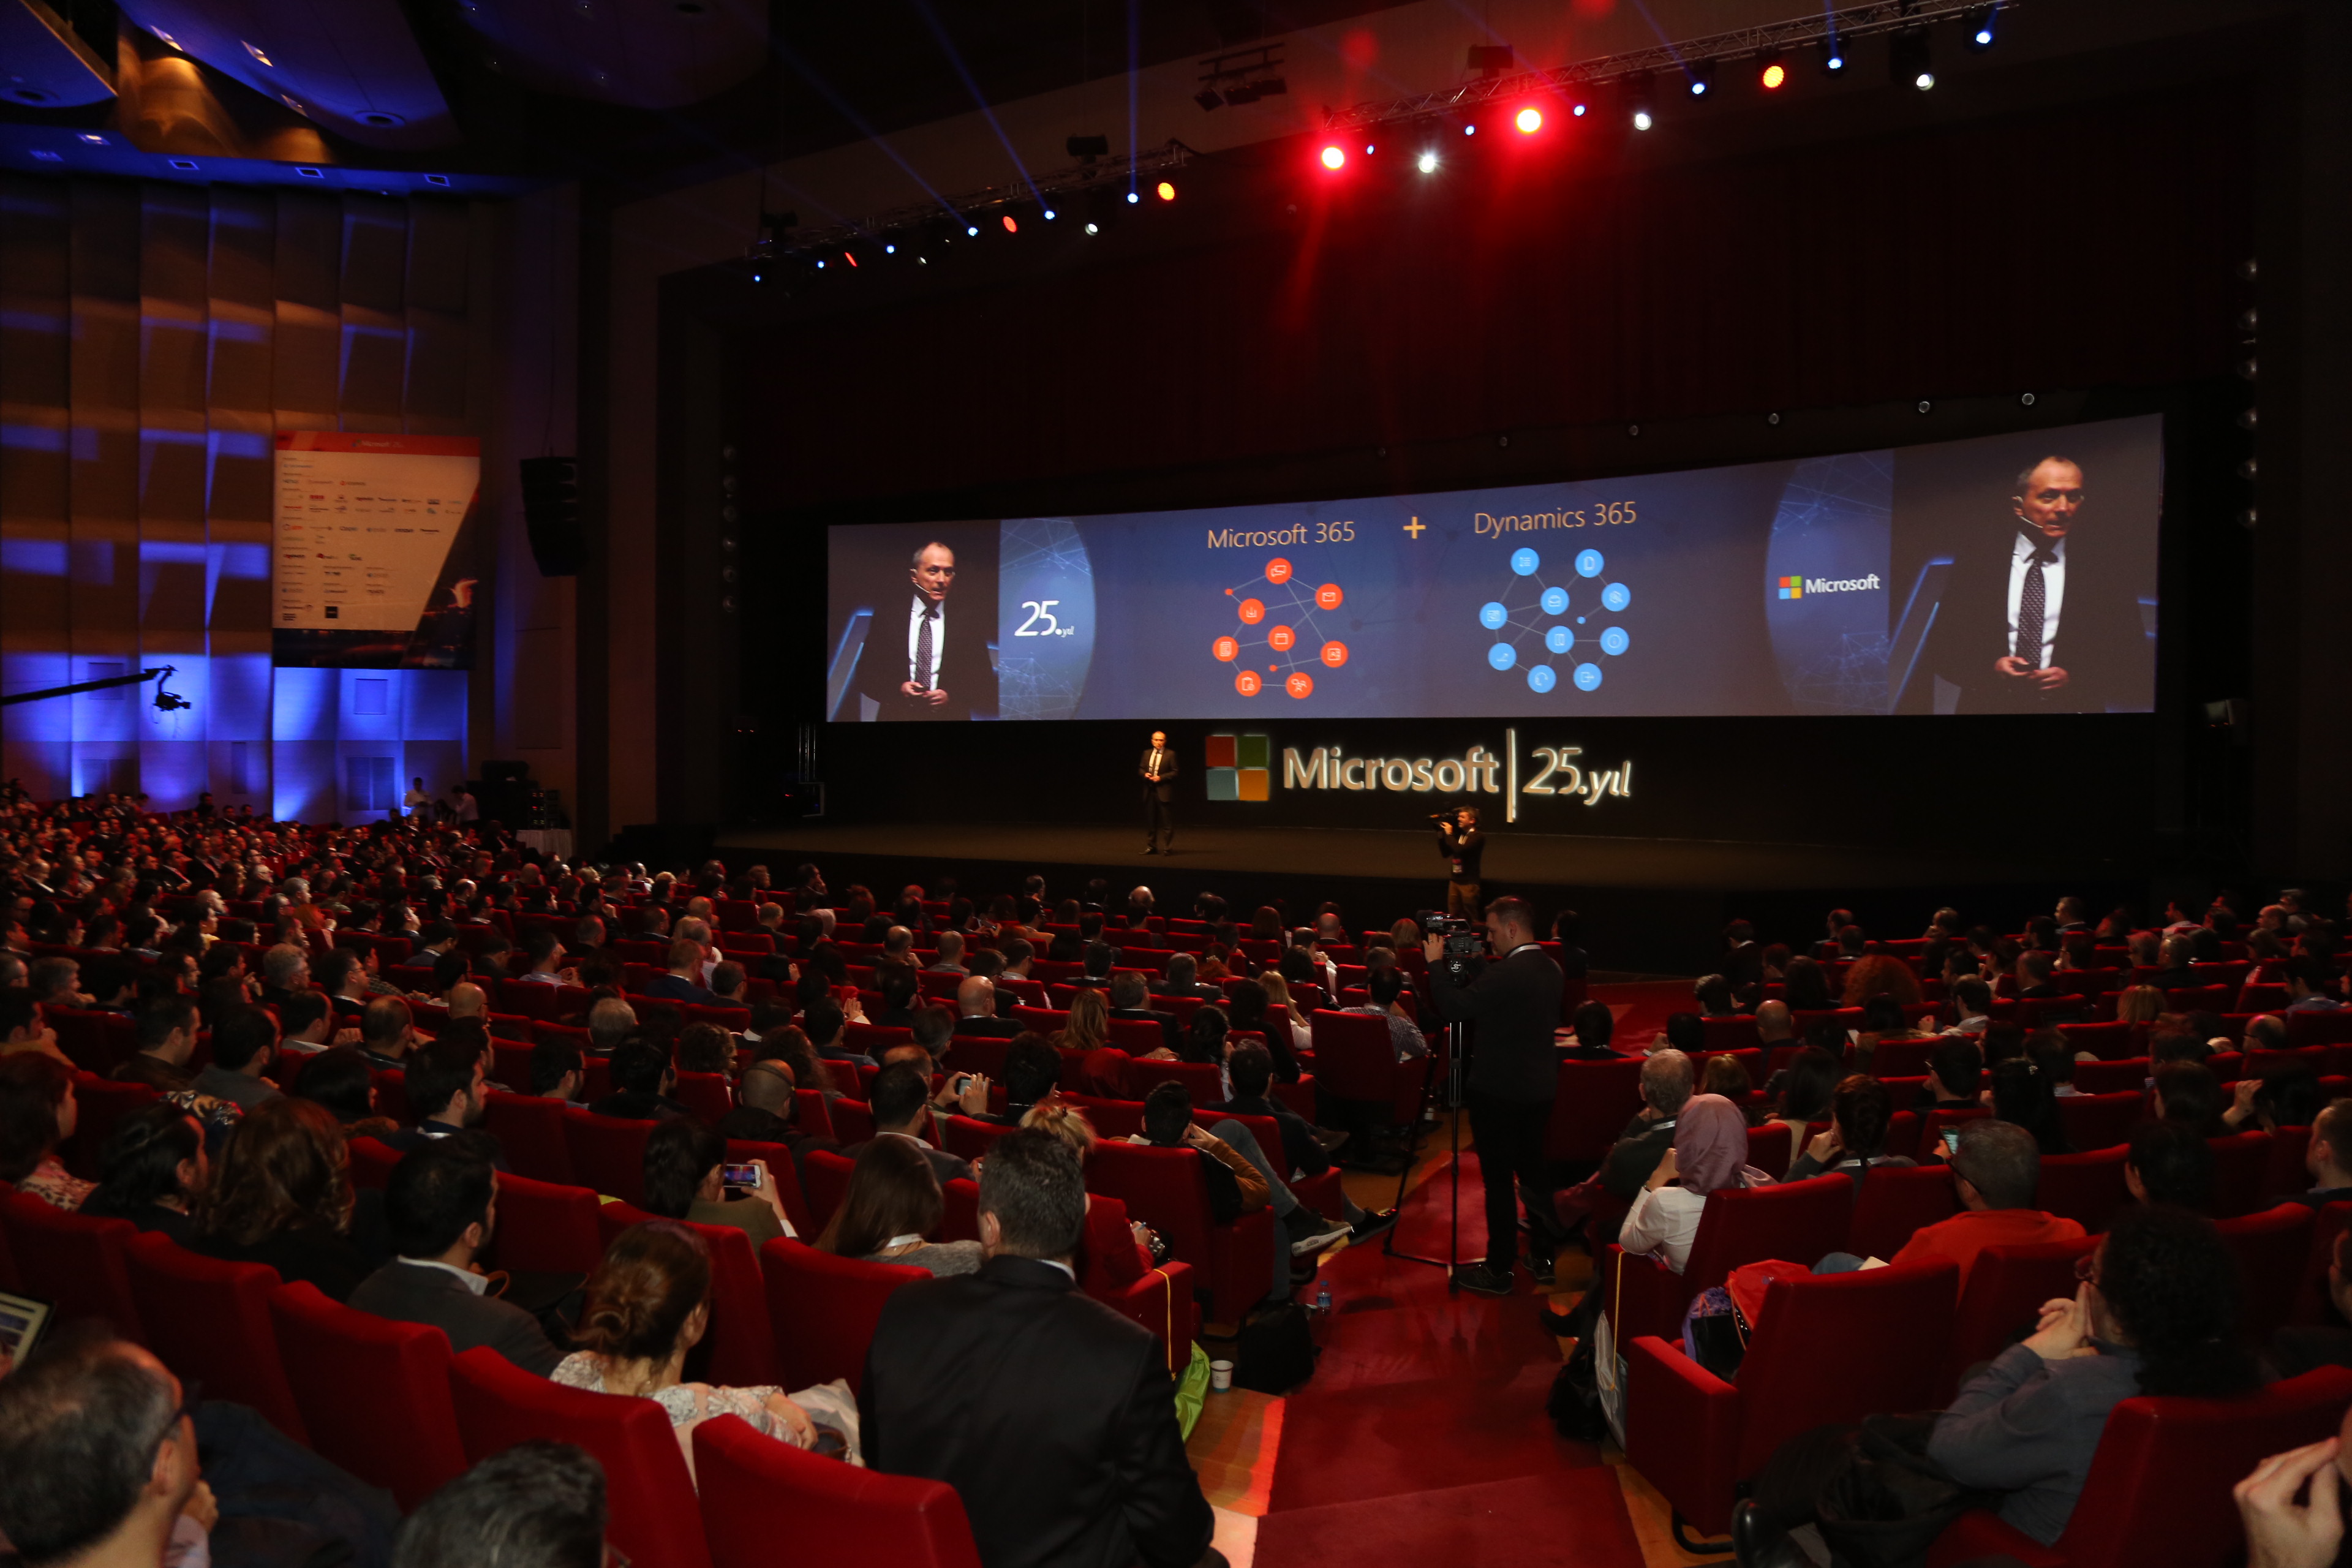 Geleceğin teknolojilerine ışık tutan Microsoft Teknoloji Zirvesi, İstanbul’da düzenlendi